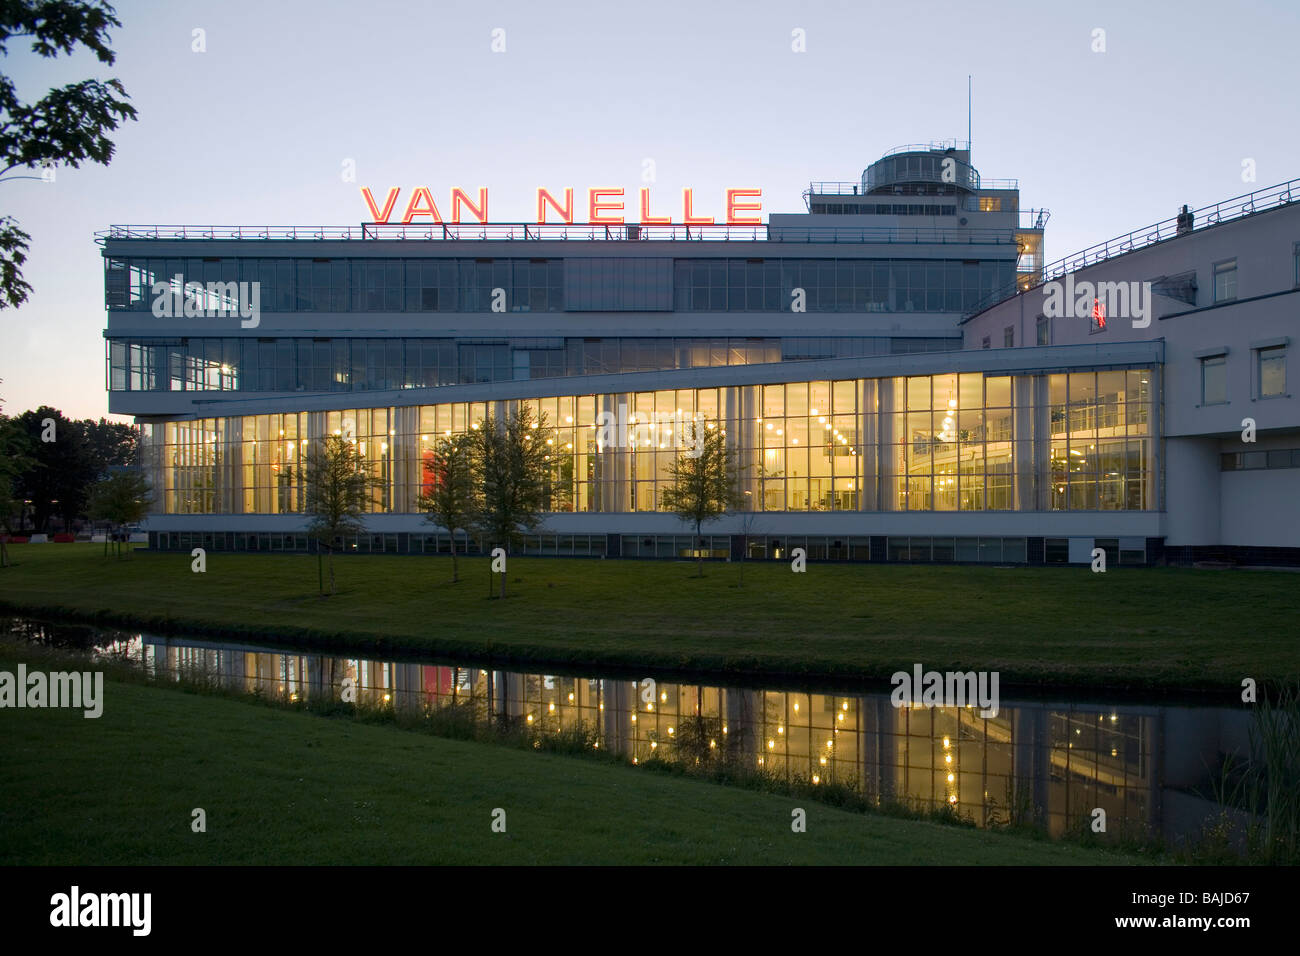 VAN NELLE FACTORY, BRINKMAN VAN DER VLUGT, ROTTERDAM, NETHERLANDS Stock Photo